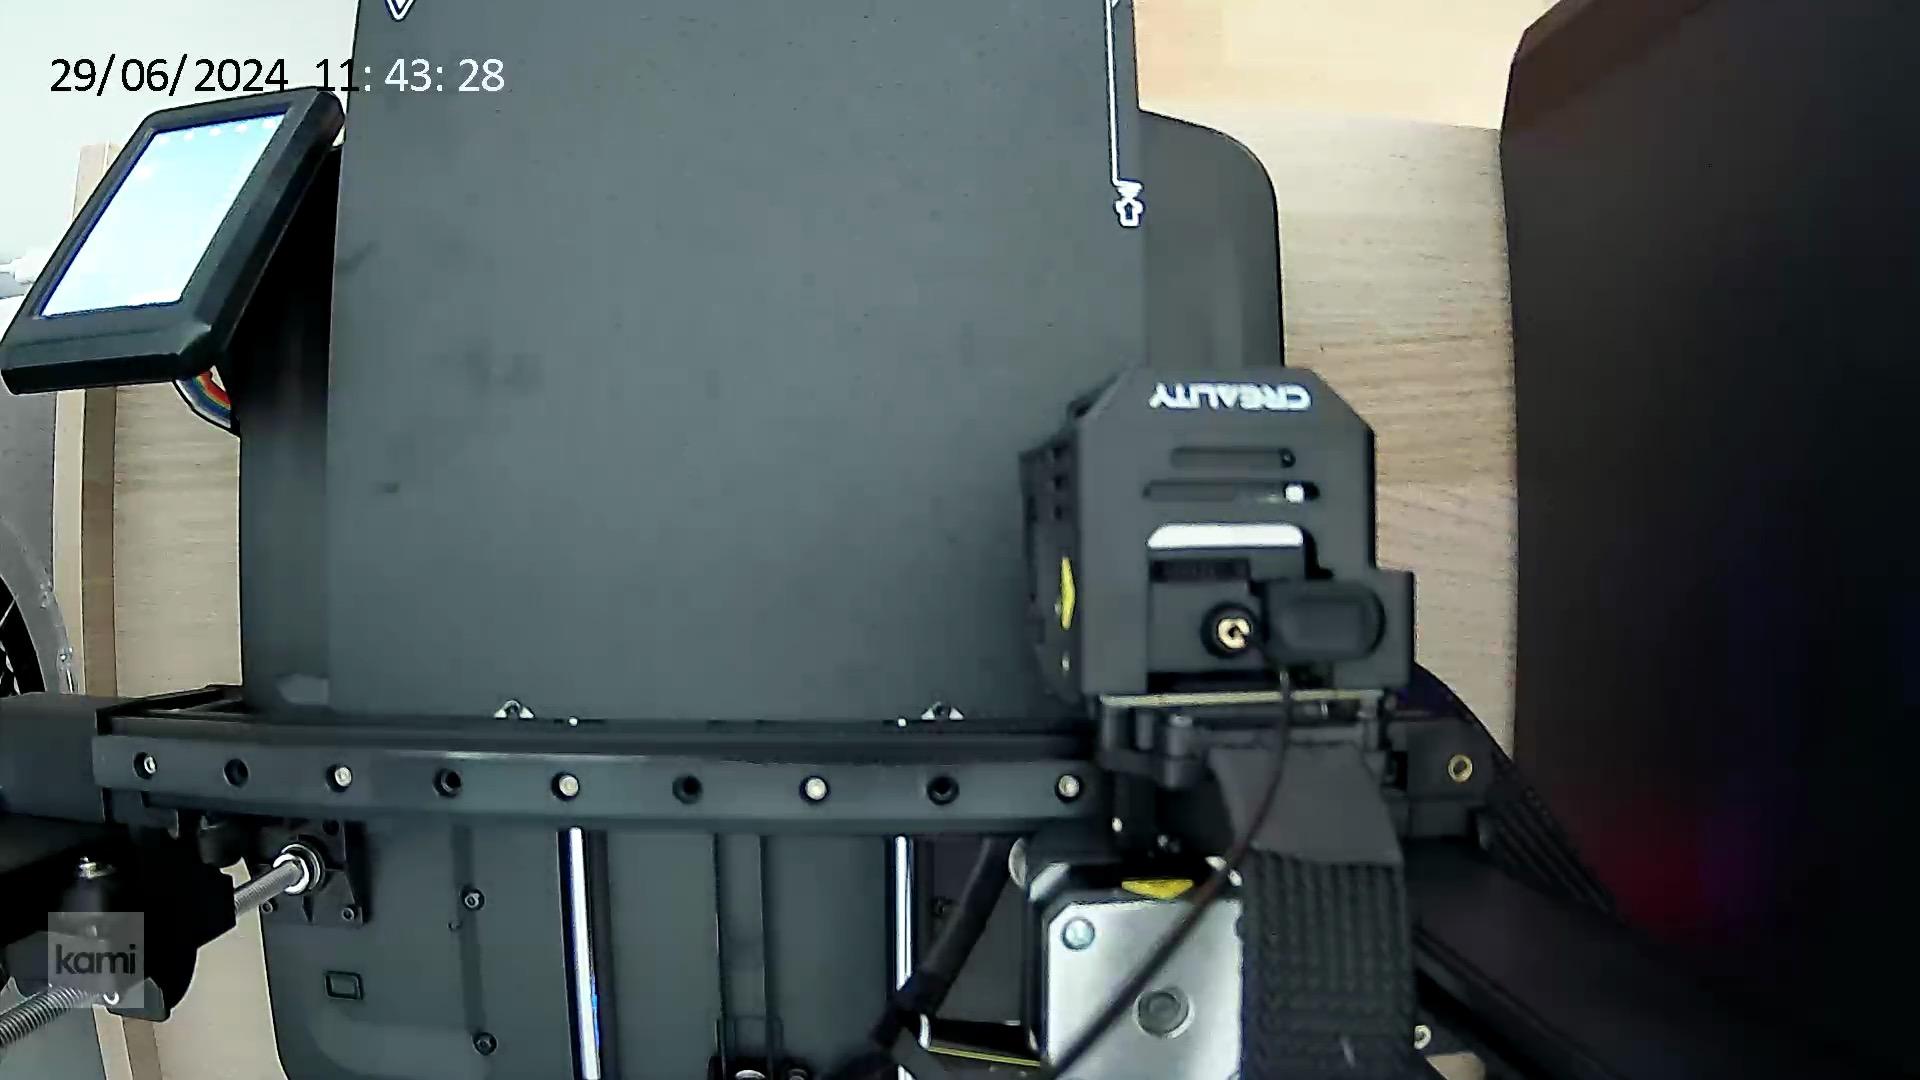 Yi Camera (1080p) top mounted holder Ender 3 V3 SE/KE 3d model